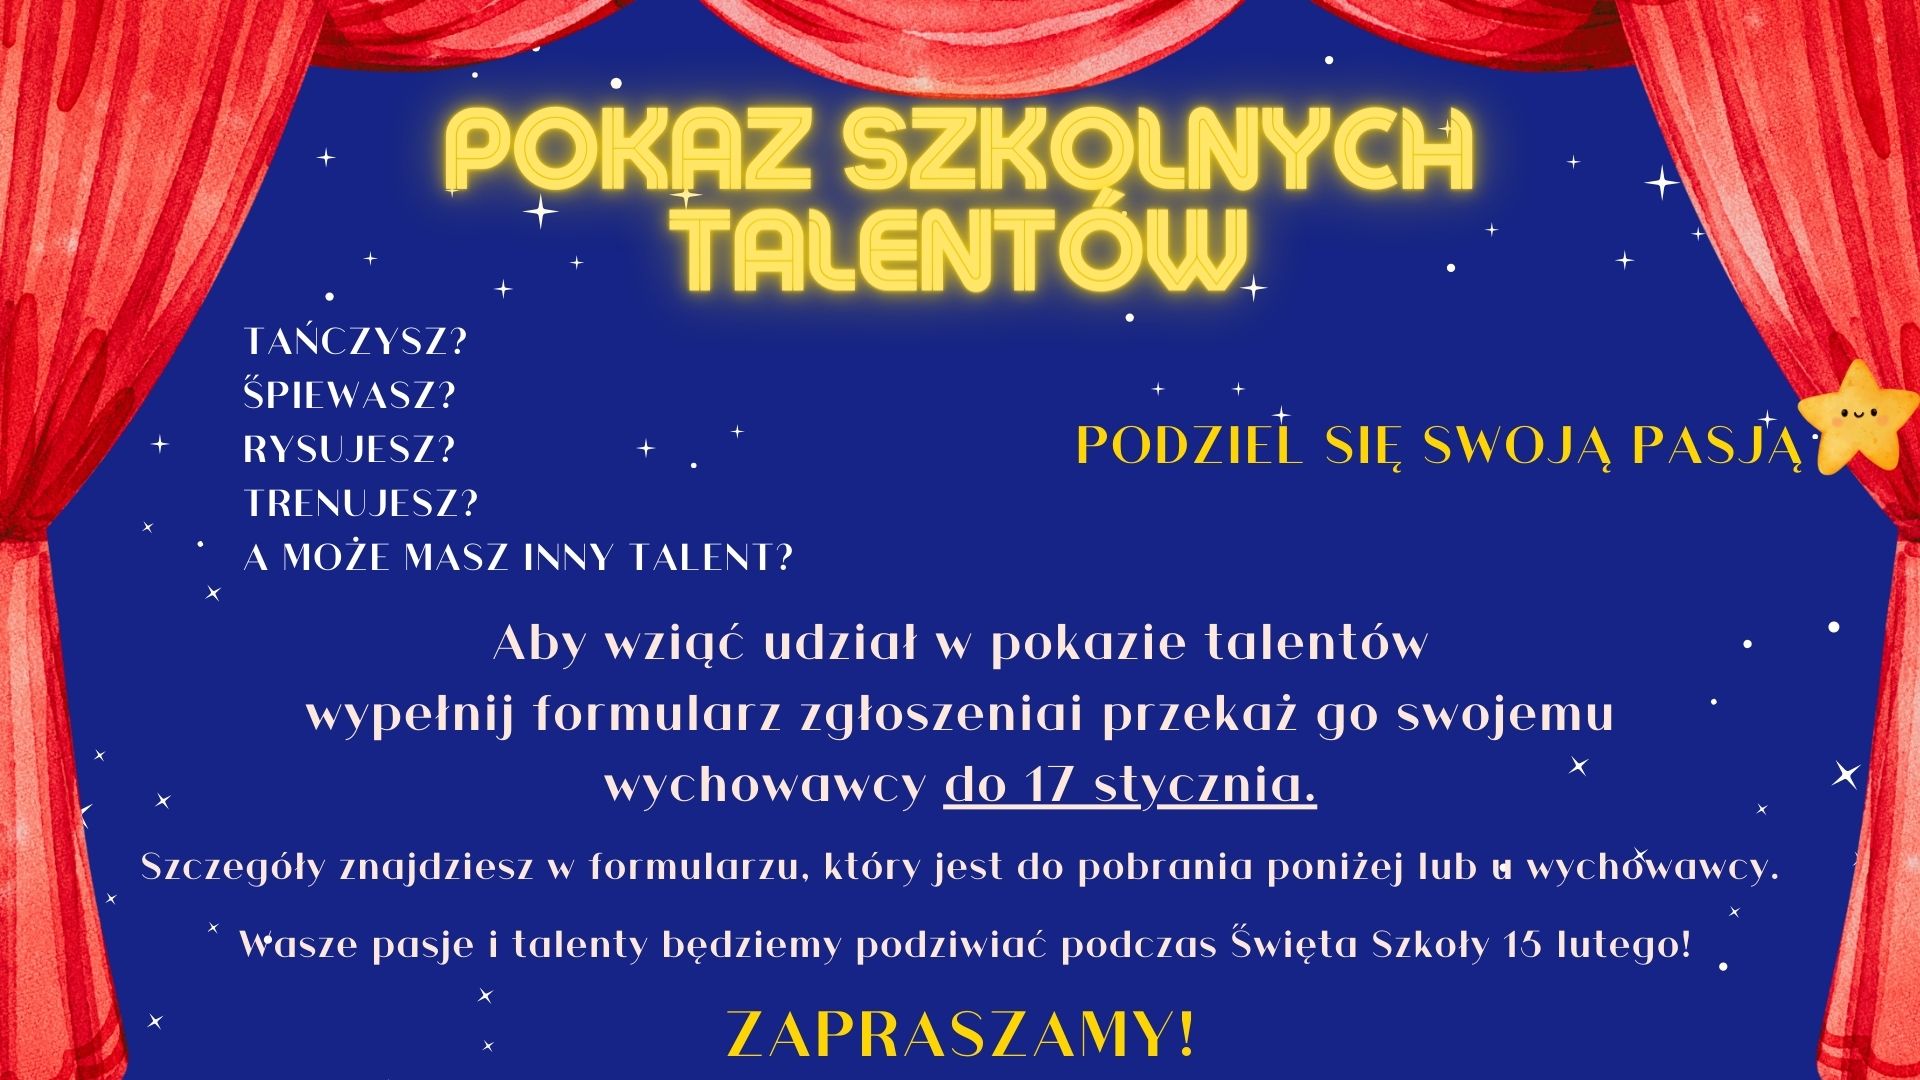 Plakat promujący Pokaz Szkolnych Talentów